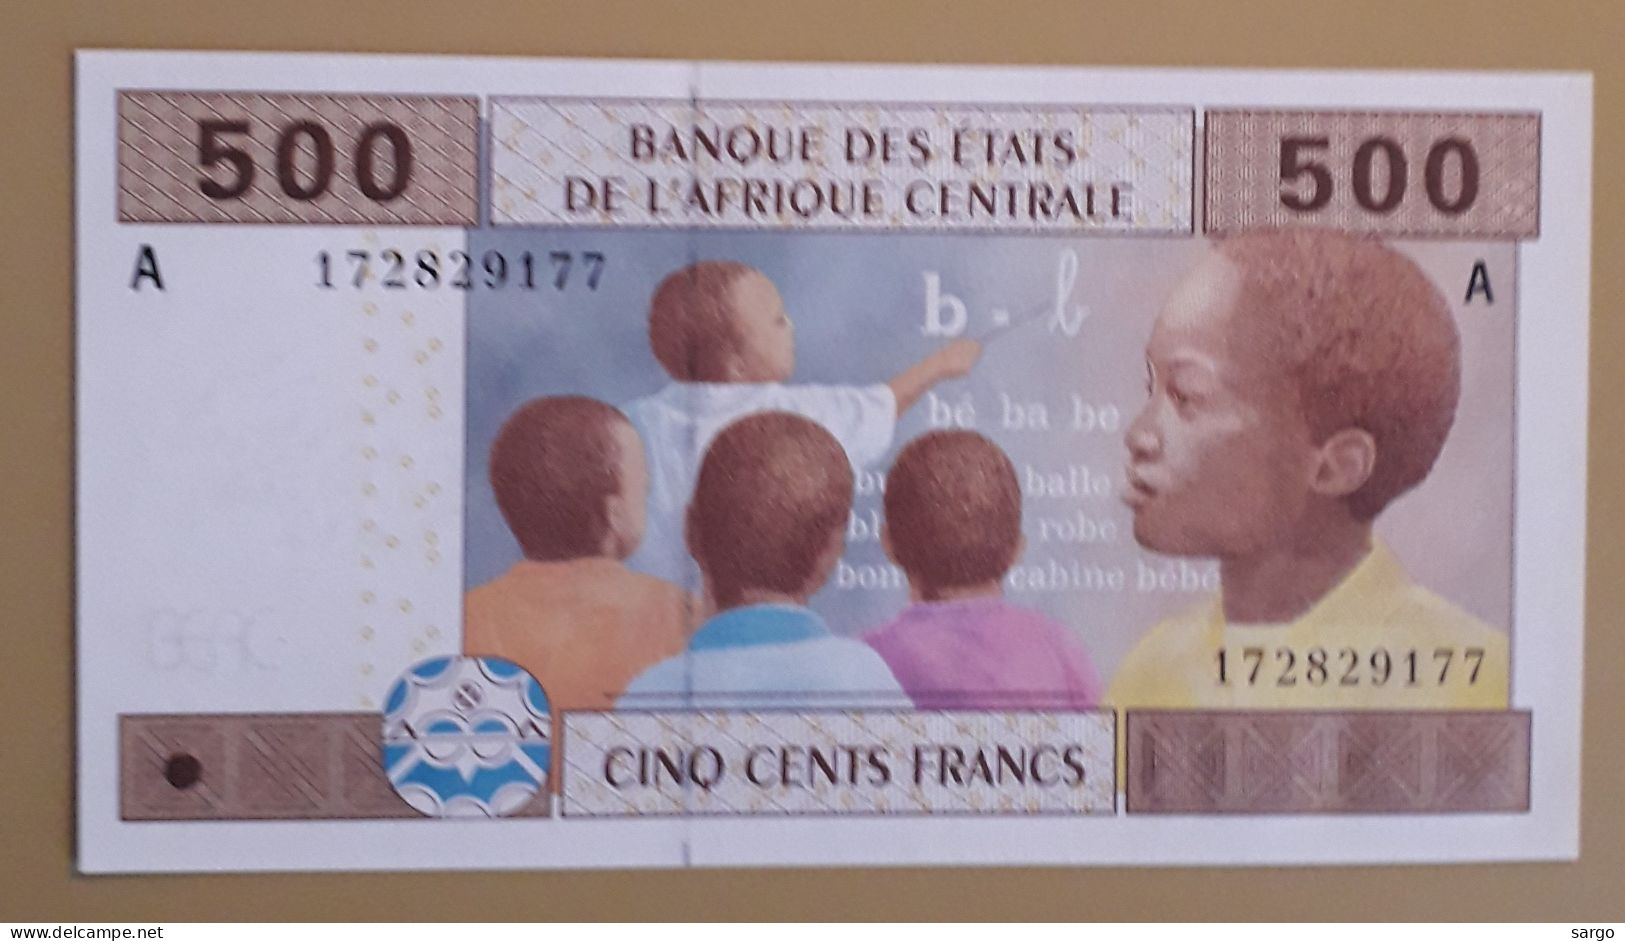 CENTRAL AFRICAN STATE - GABON - 500 FRANCS - 2002 - 2021 - UNCIRC - P 06 - BANKNOTES - PAPER MONEY - CARTAMONETA - - États D'Afrique Centrale